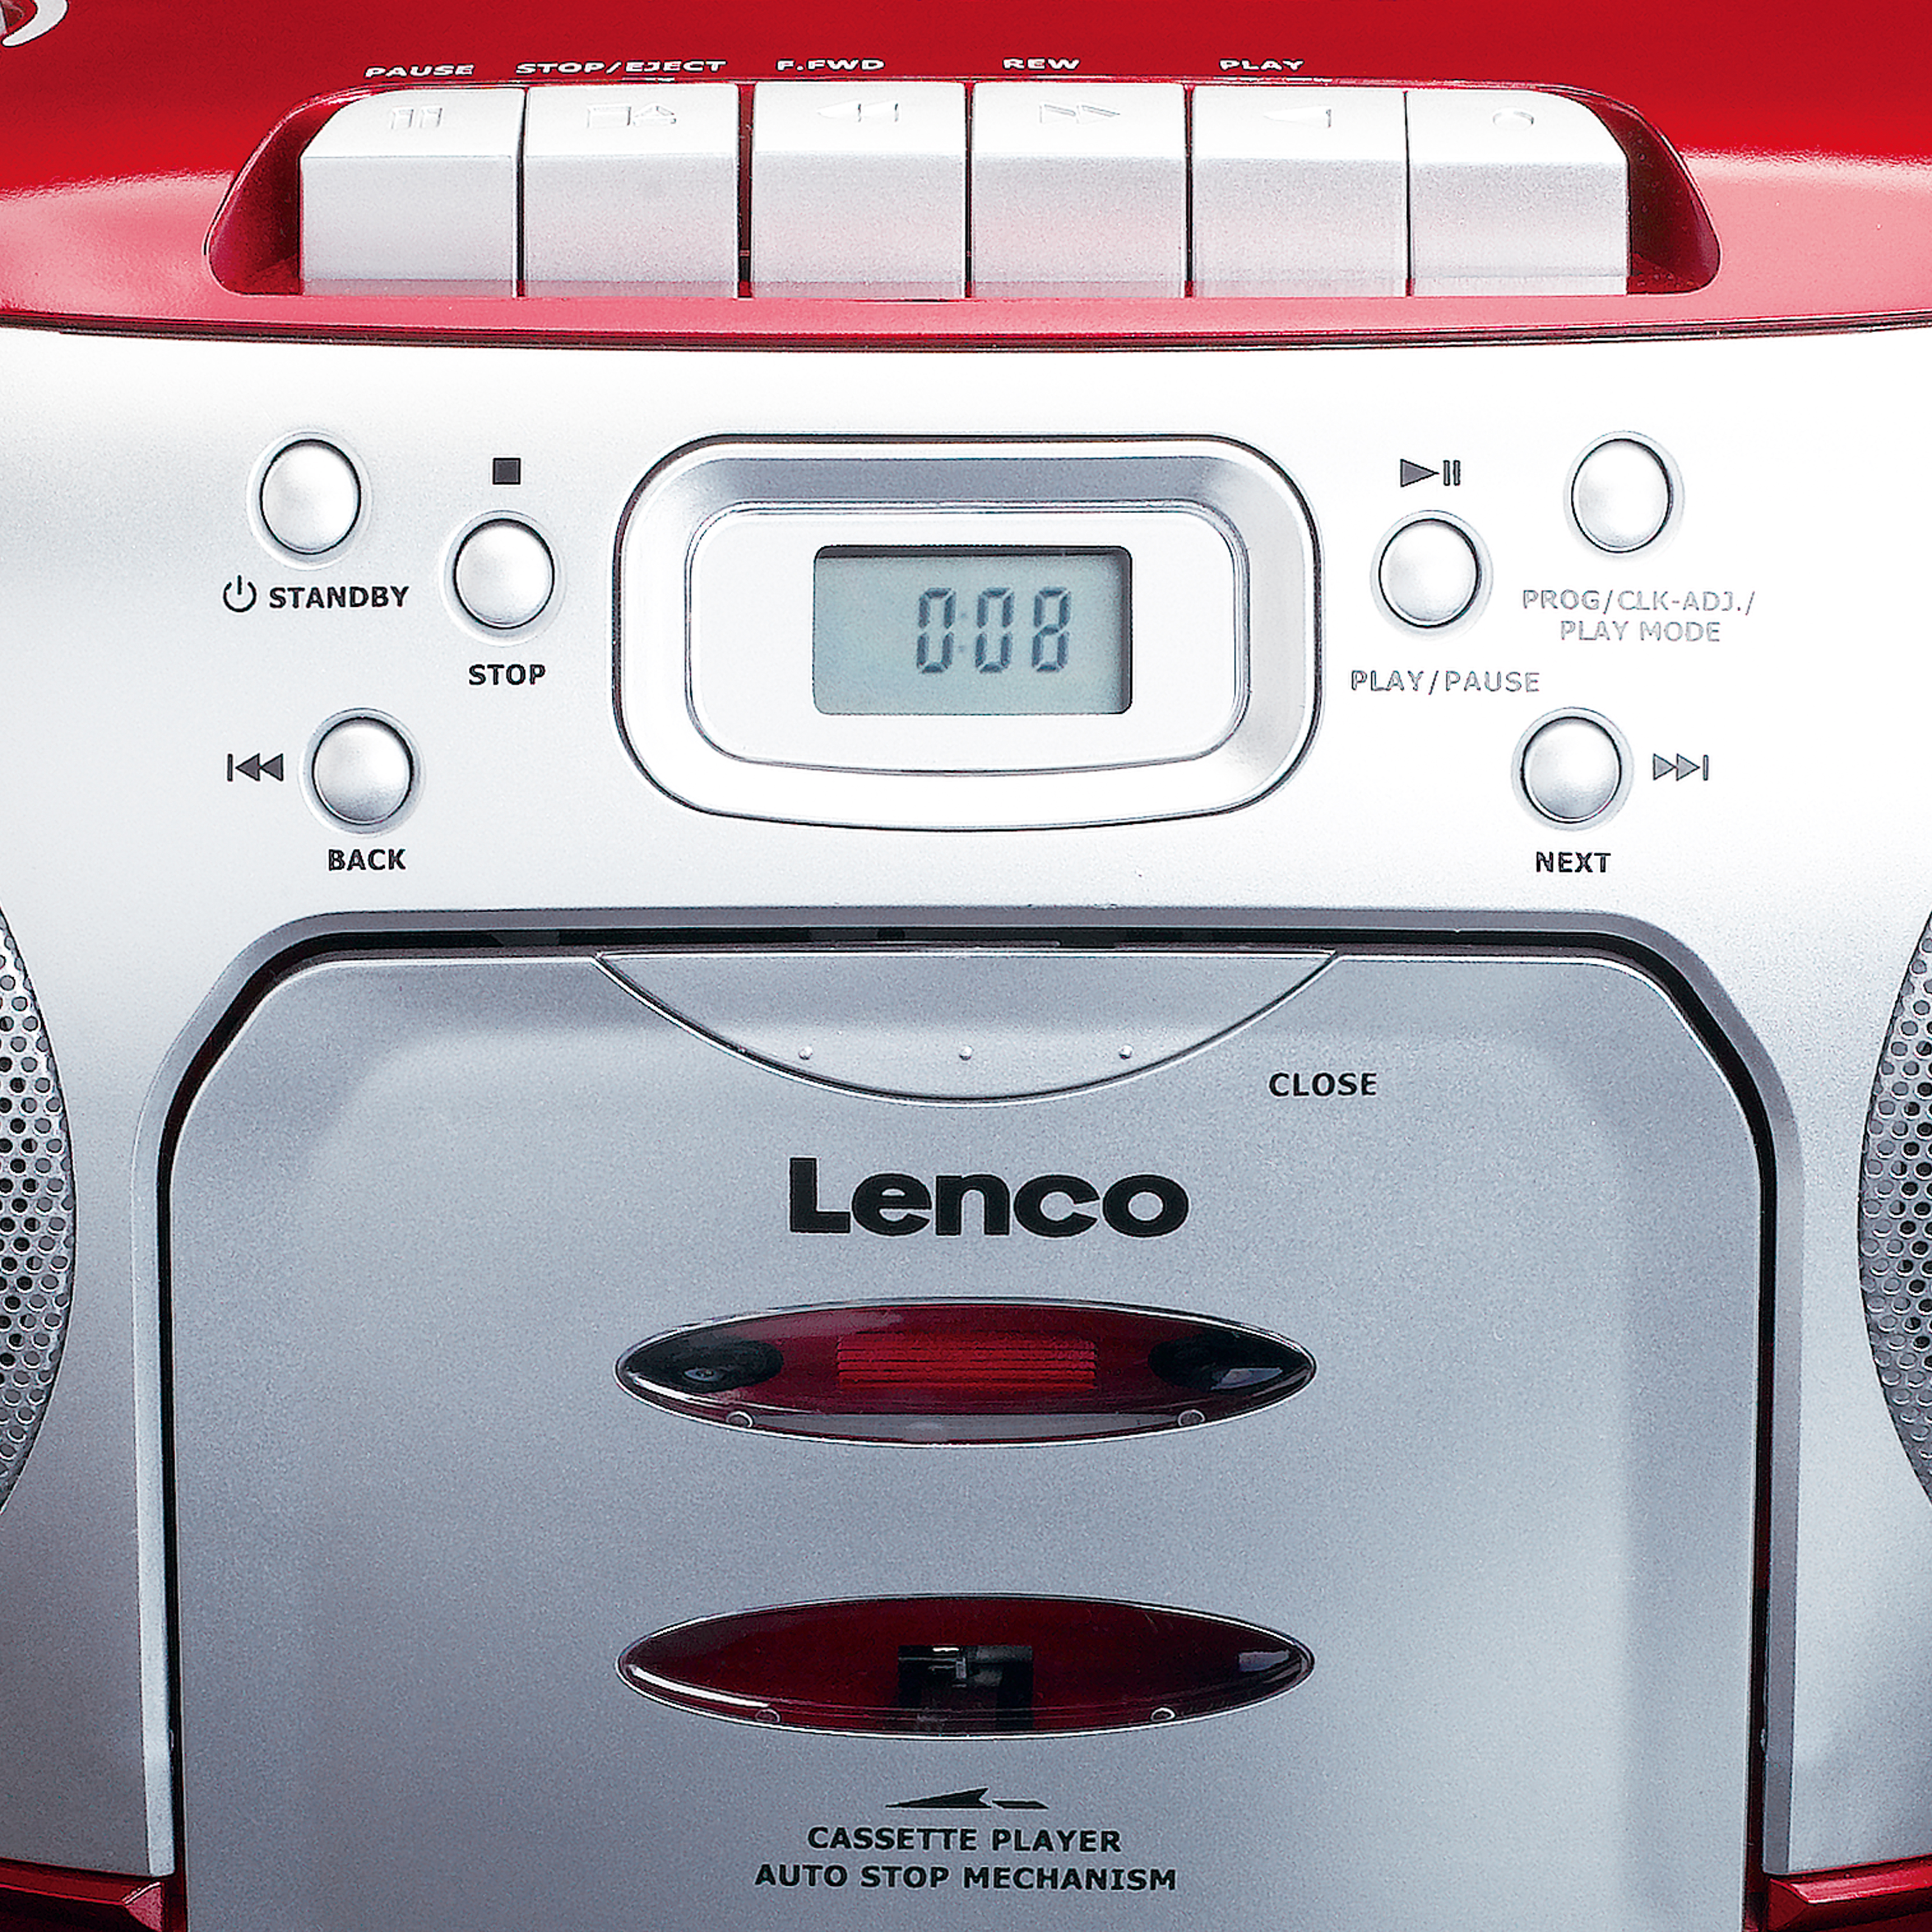 LENCO SCD-410RD - Kassetten- und cd-spieler - Radiorecorder, Rot-Silber